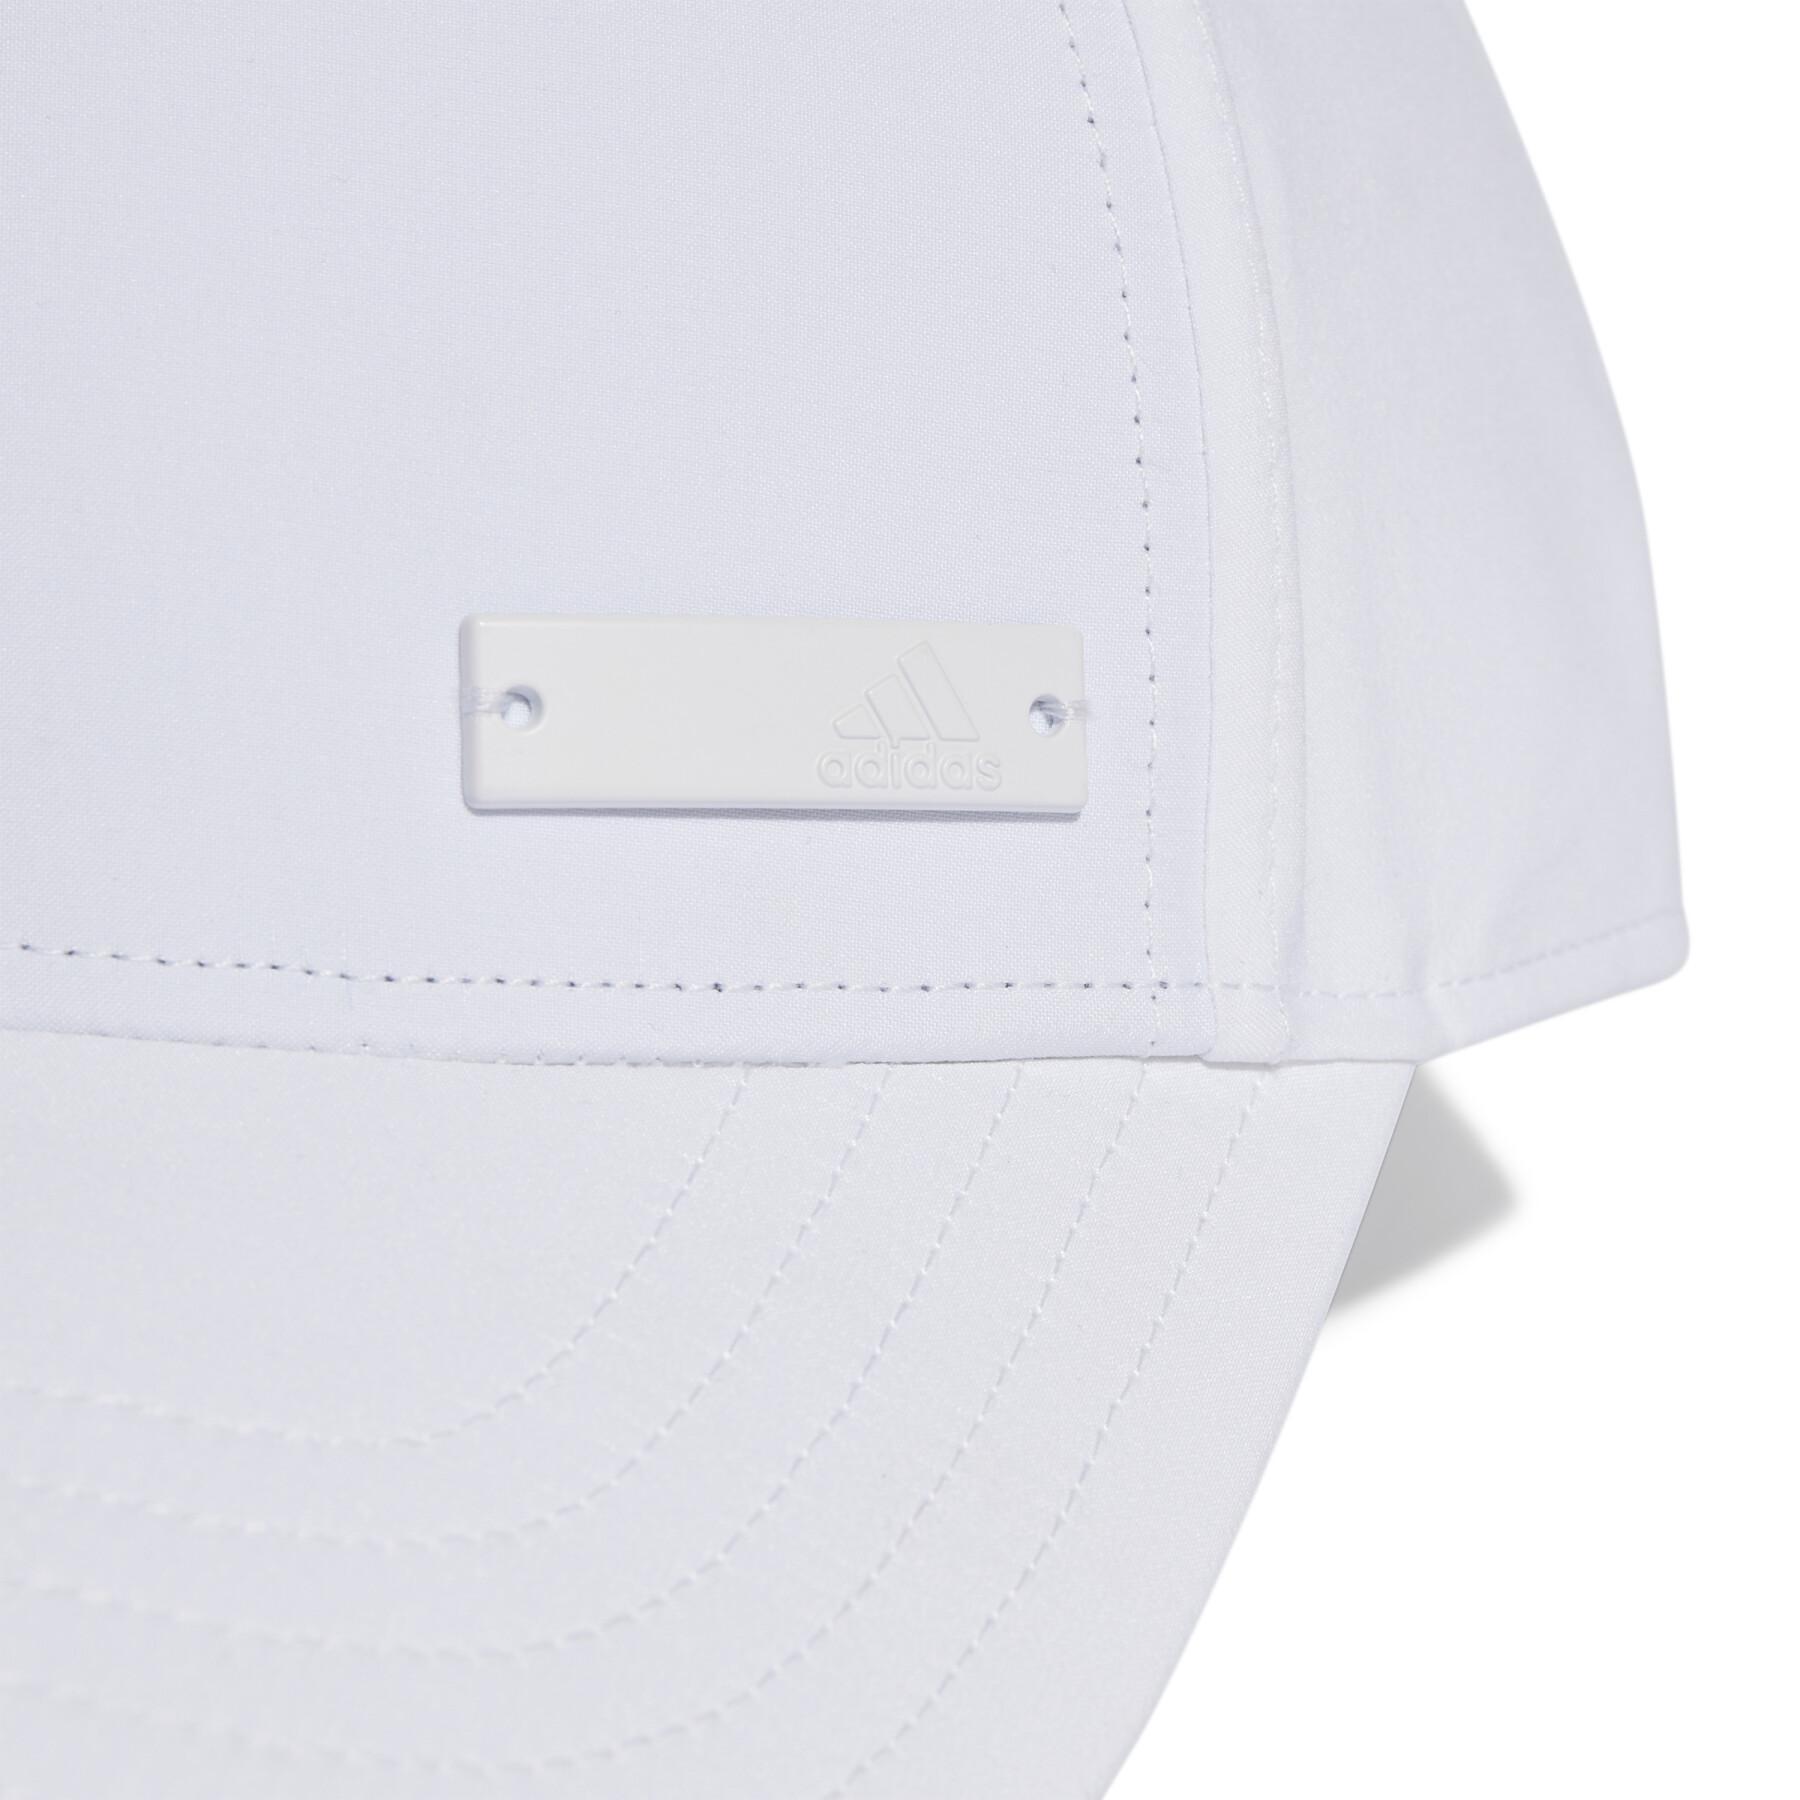 Leichte Kappe mit Metallabzeichen Adidas